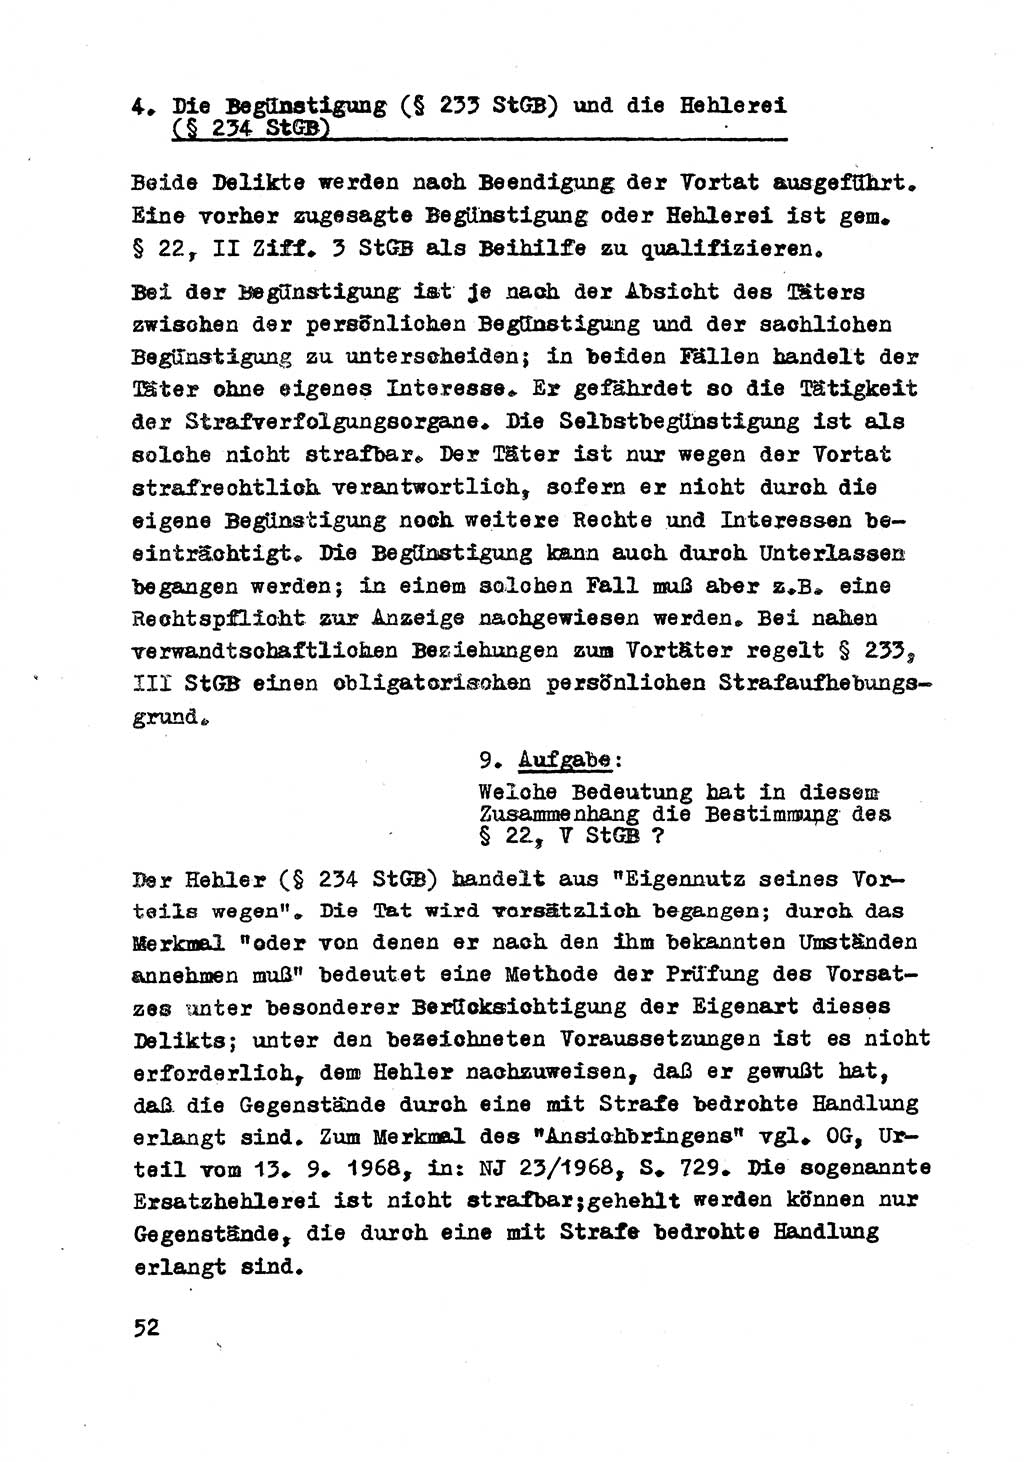 Strafrecht der DDR (Deutsche Demokratische Republik), Besonderer Teil, Lehrmaterial, Heft 8 1970, Seite 52 (Strafr. DDR BT Lehrmat. H. 8 1970, S. 52)